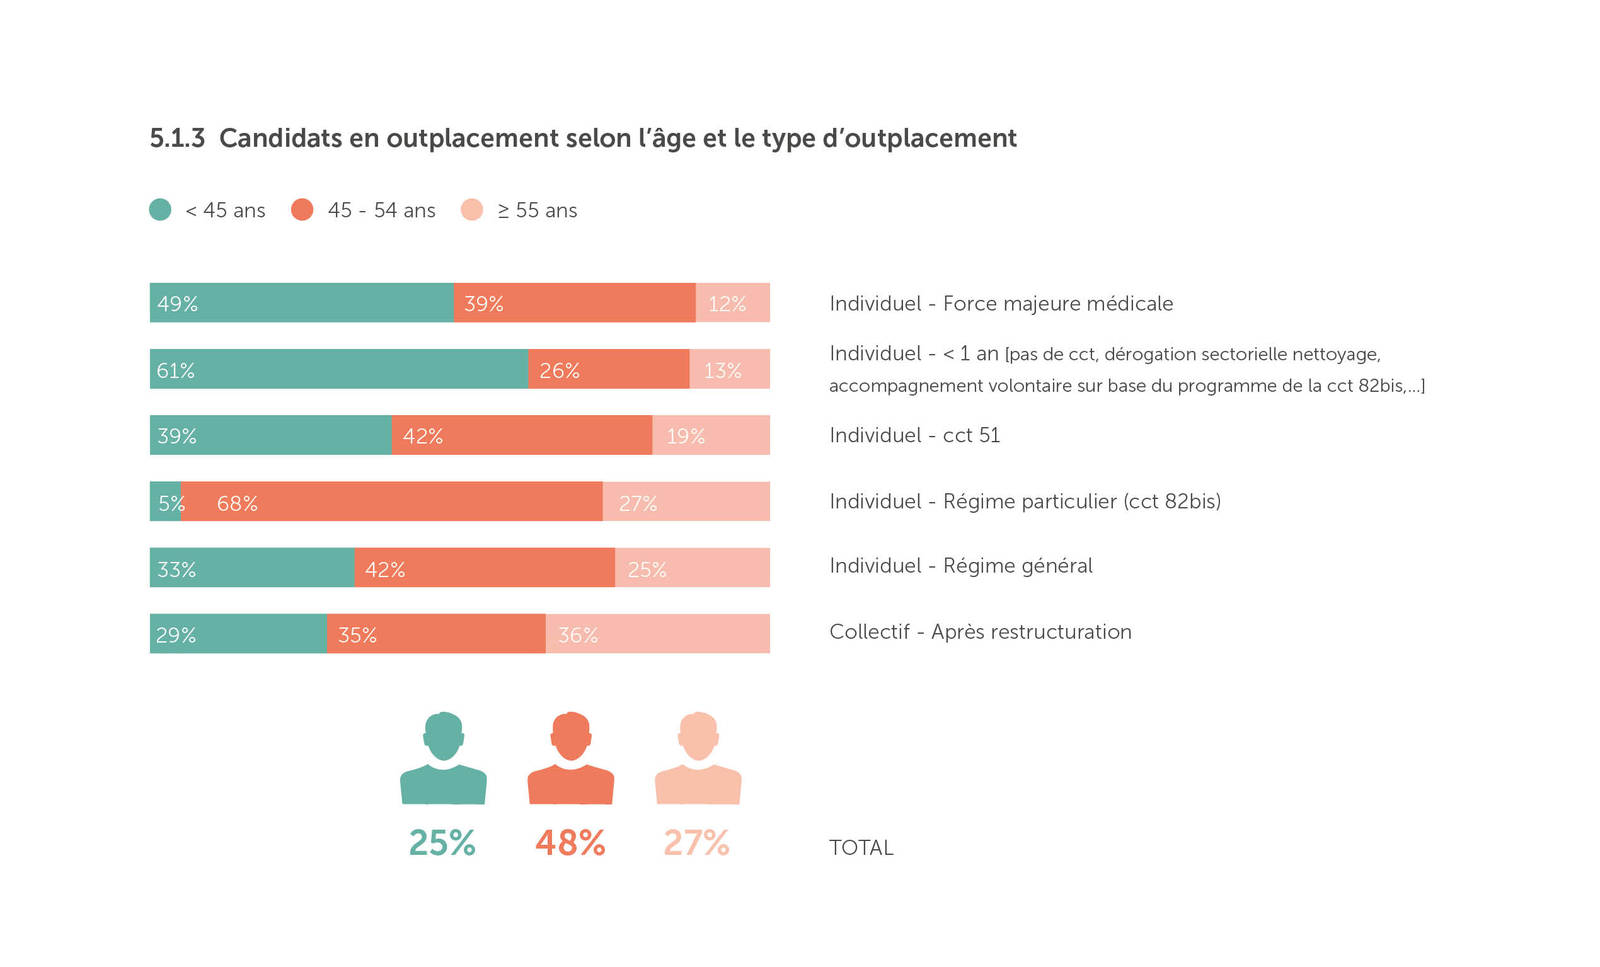 Kandidaten in outplacement volgens leeftijd en type outplacement (Jaarverslag 2019)